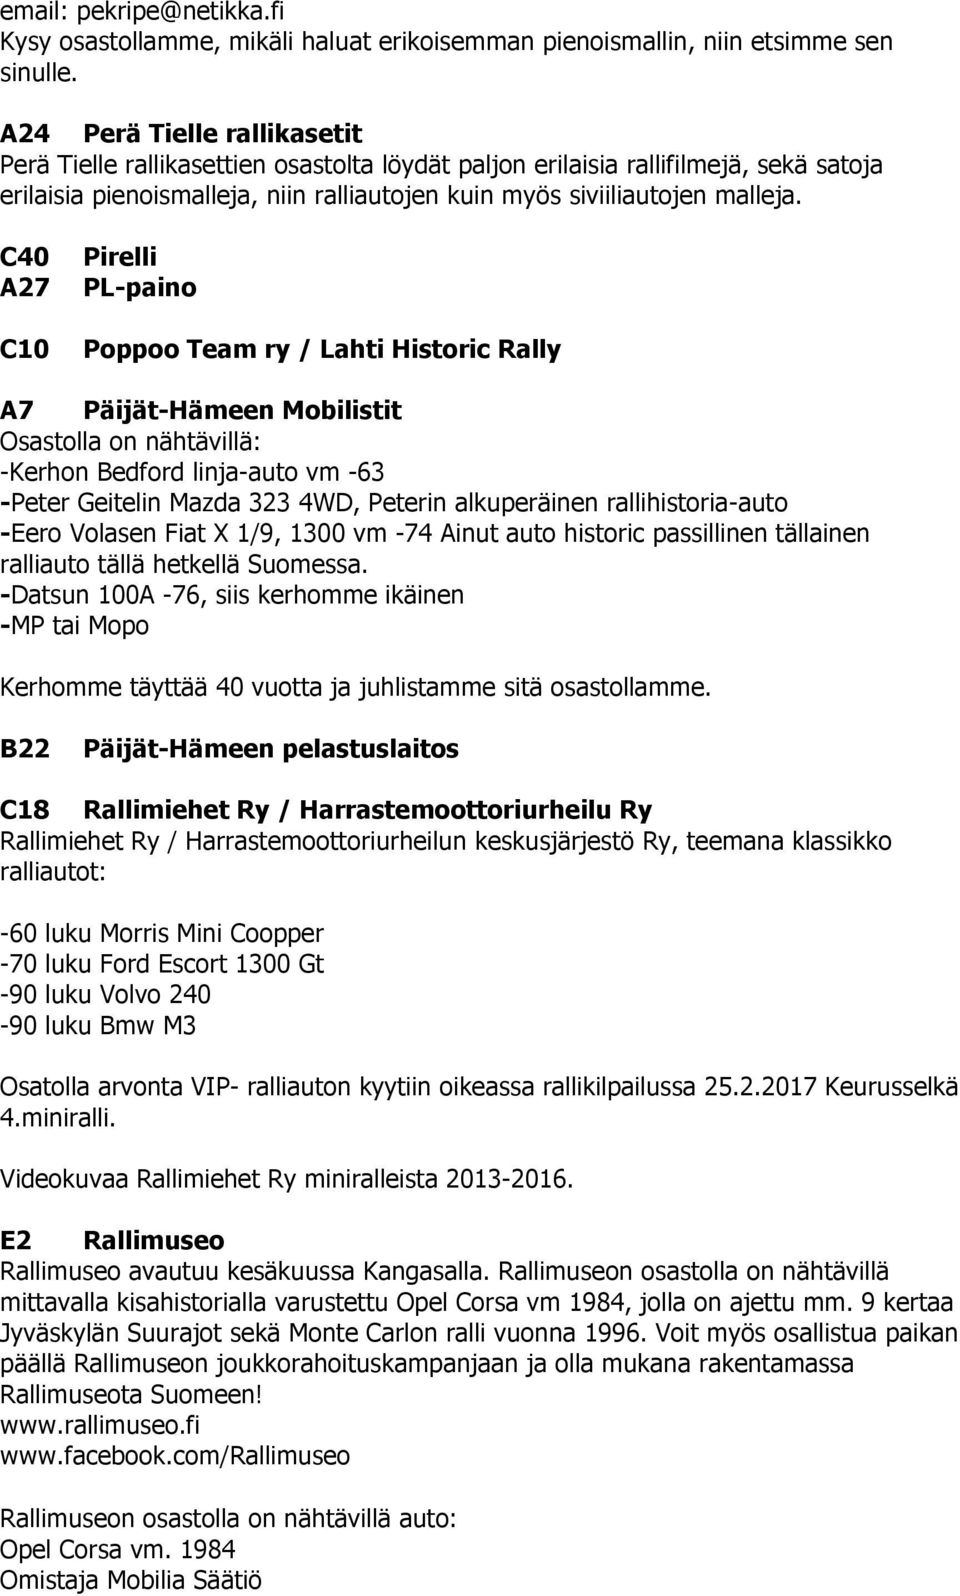 C40 A27 C10 Pirelli PL-paino Poppoo Team ry / Lahti Historic Rally A7 Päijät-Hämeen Mobilistit Osastolla on nähtävillä: -Kerhon Bedford linja-auto vm -63 -Peter Geitelin Mazda 323 4WD, Peterin